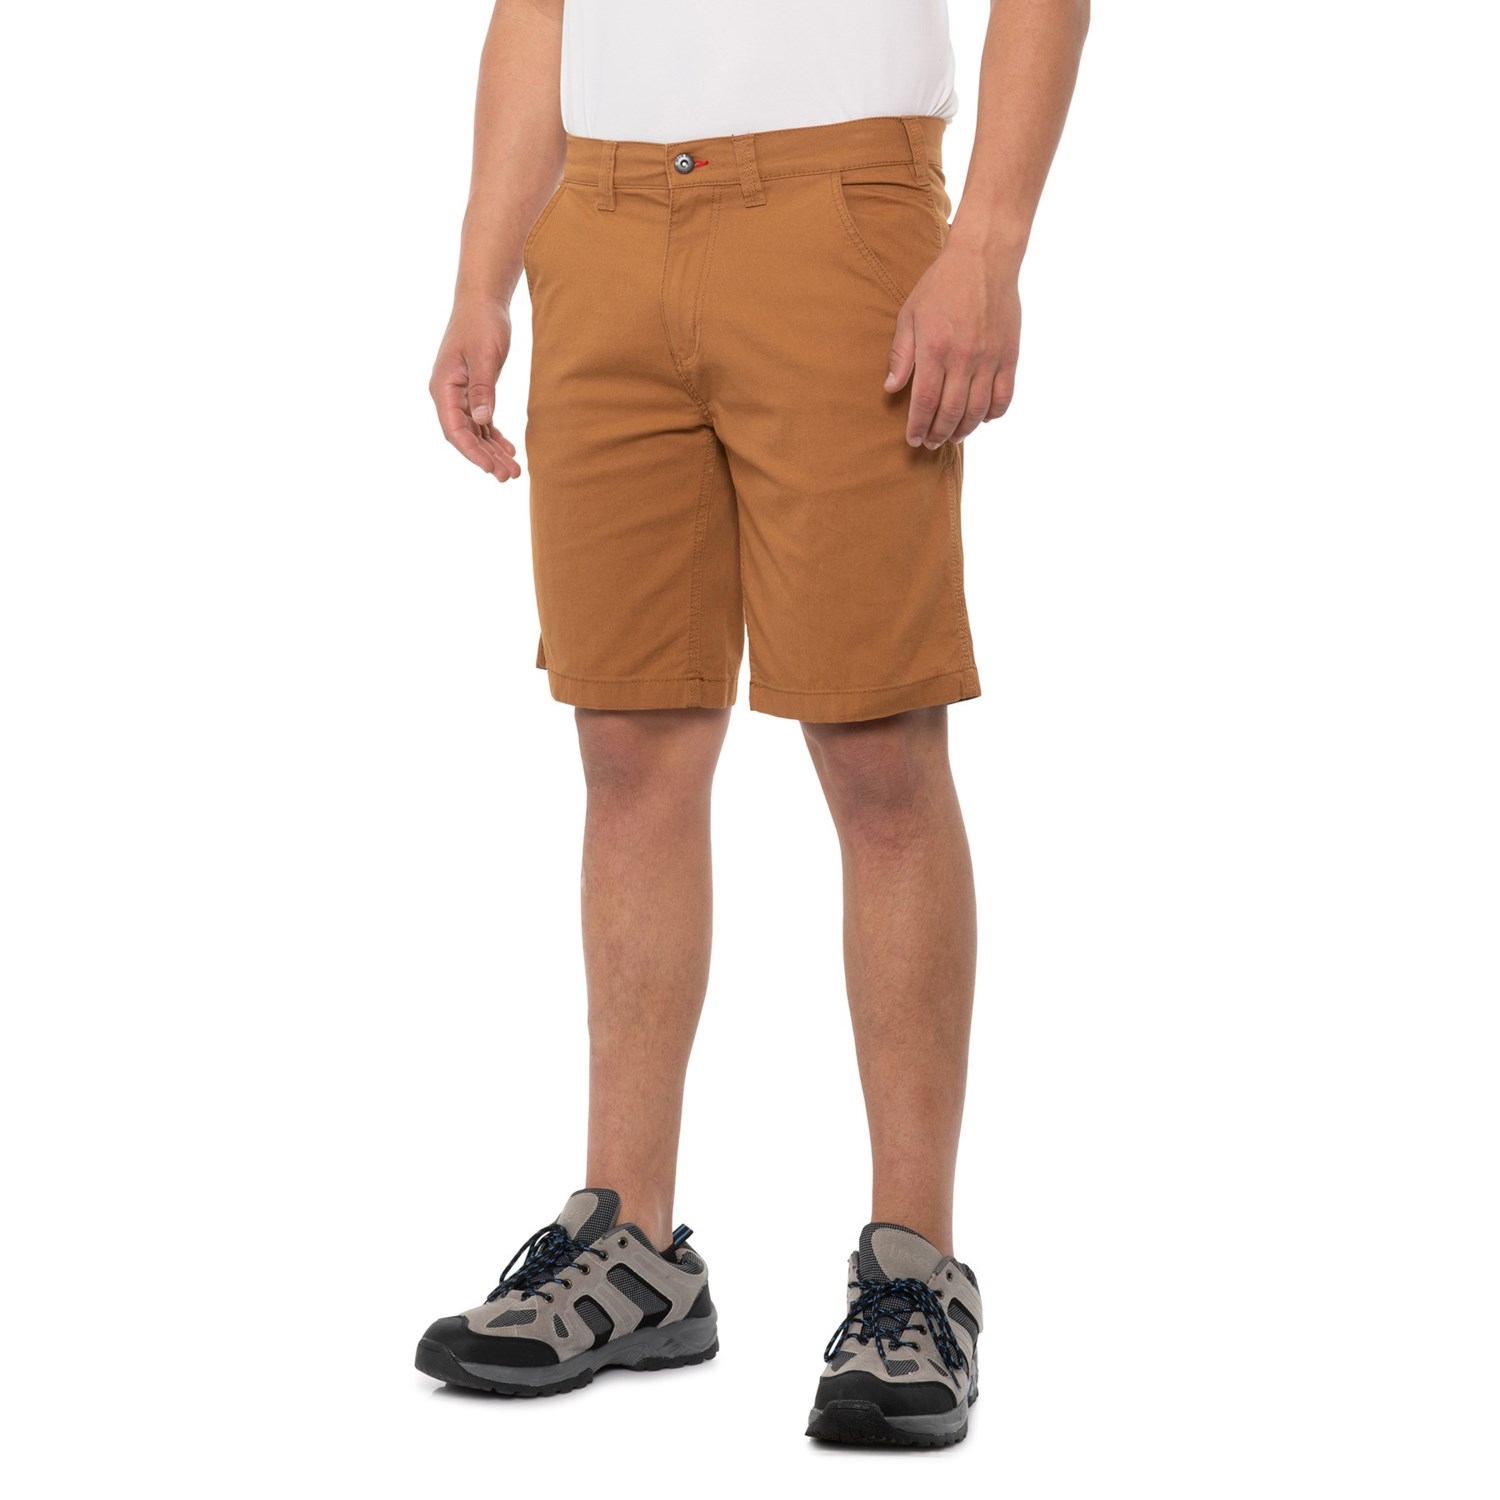 Eddie Bauer Workwear Access Canvas Work Shorts (For Men) - Save 57%